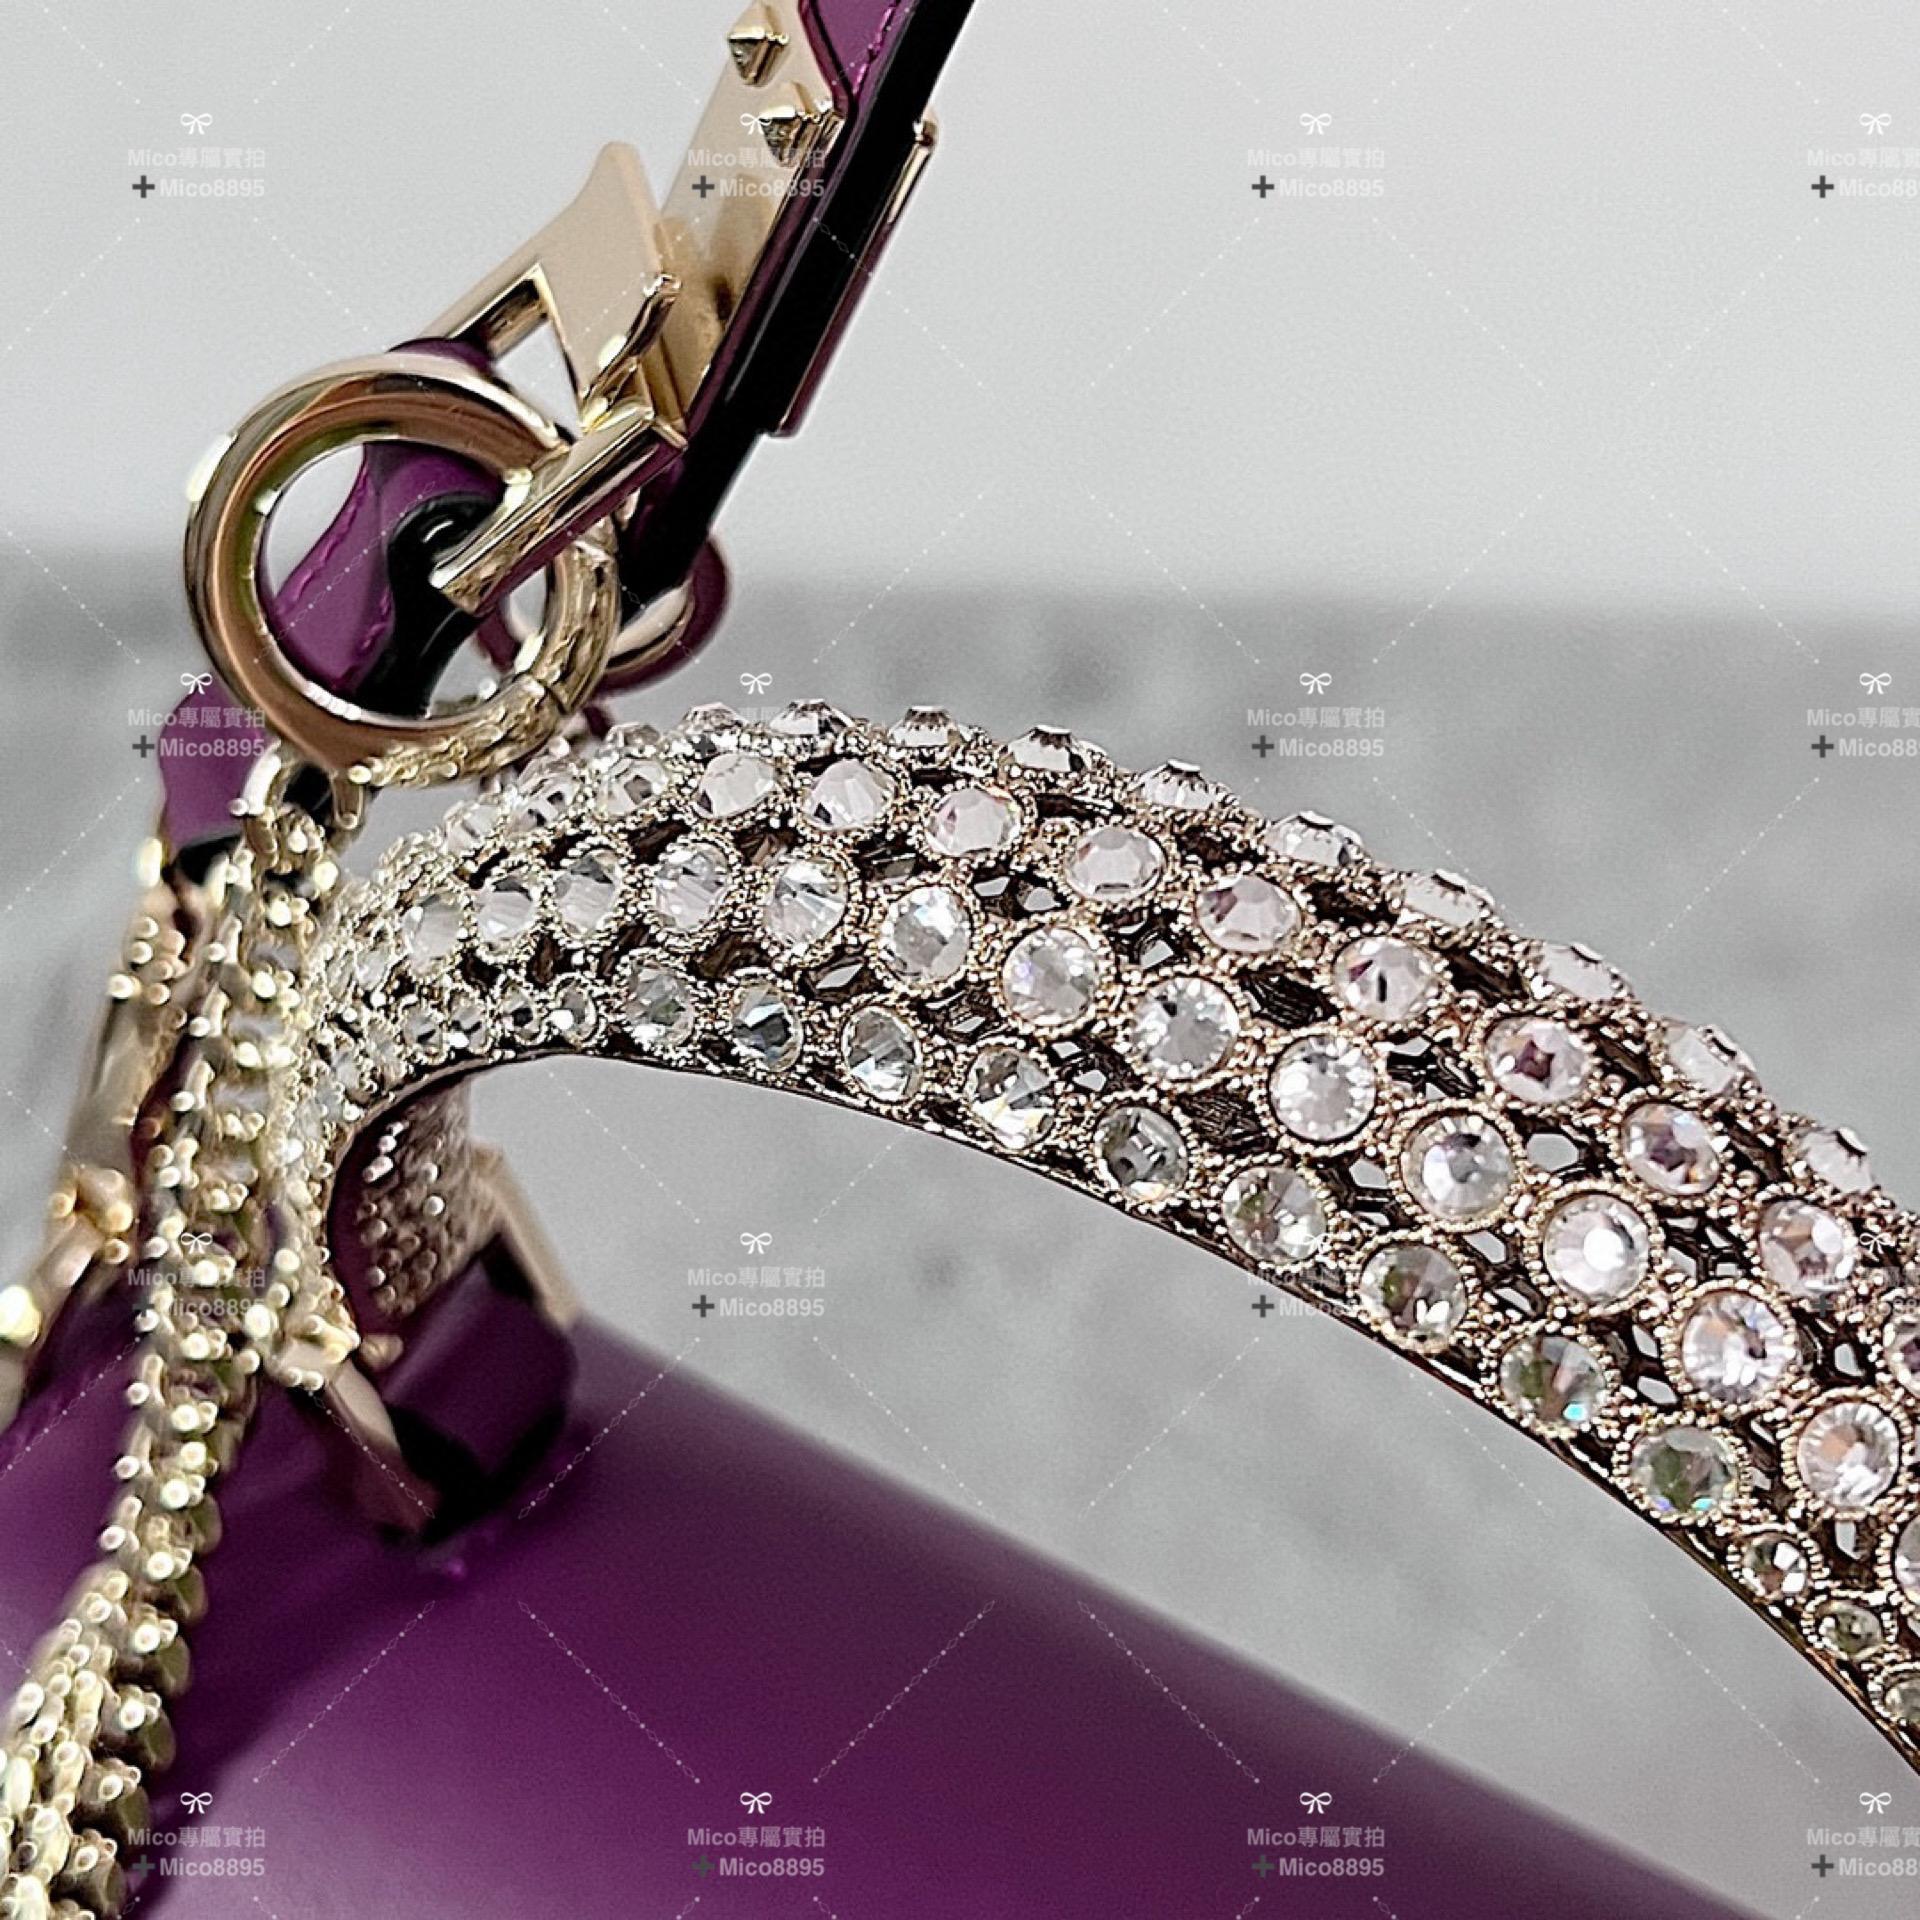 Valentino VSLING小號 水晶裝飾小牛皮手袋， 可斜挎，提手設計便於手提 深紫色 22cm